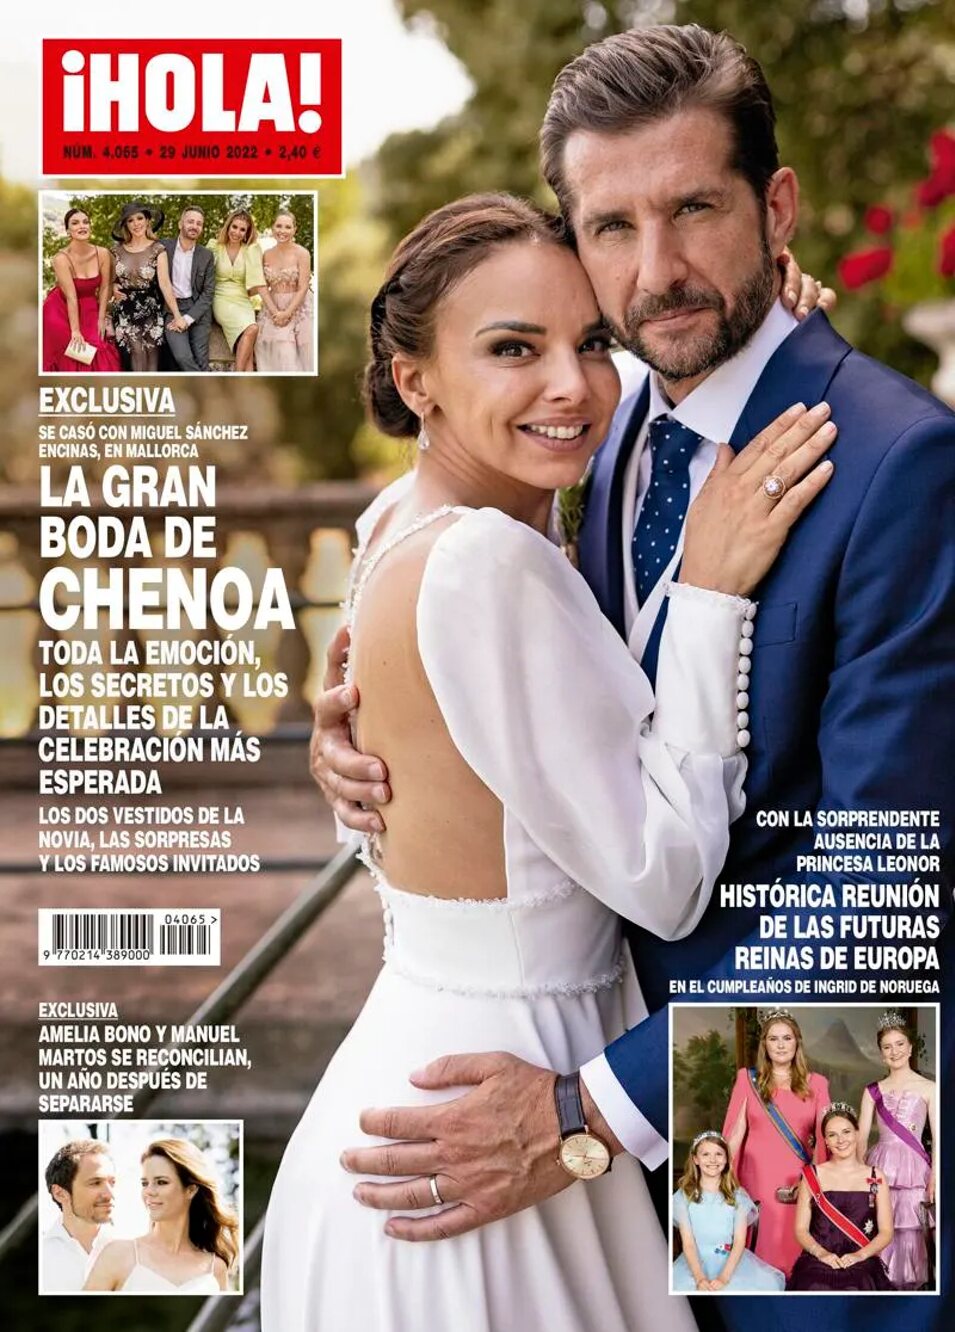 Chenoa y Miguel Sánchez Encinas estuvieron 17 meses casados | Foto: ¡Hola!